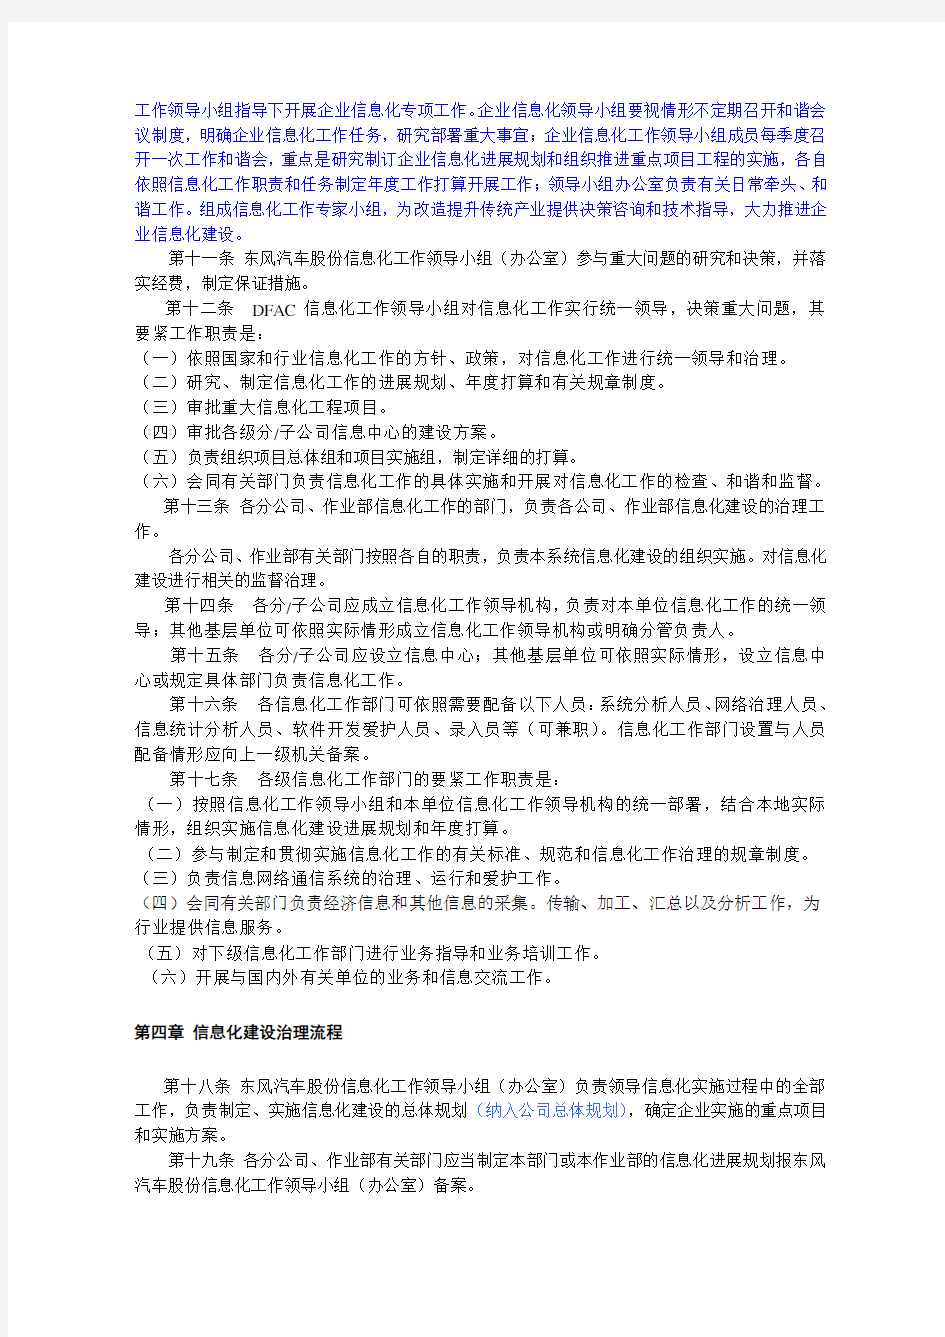 东风汽车股份有限公司信息化管理办法